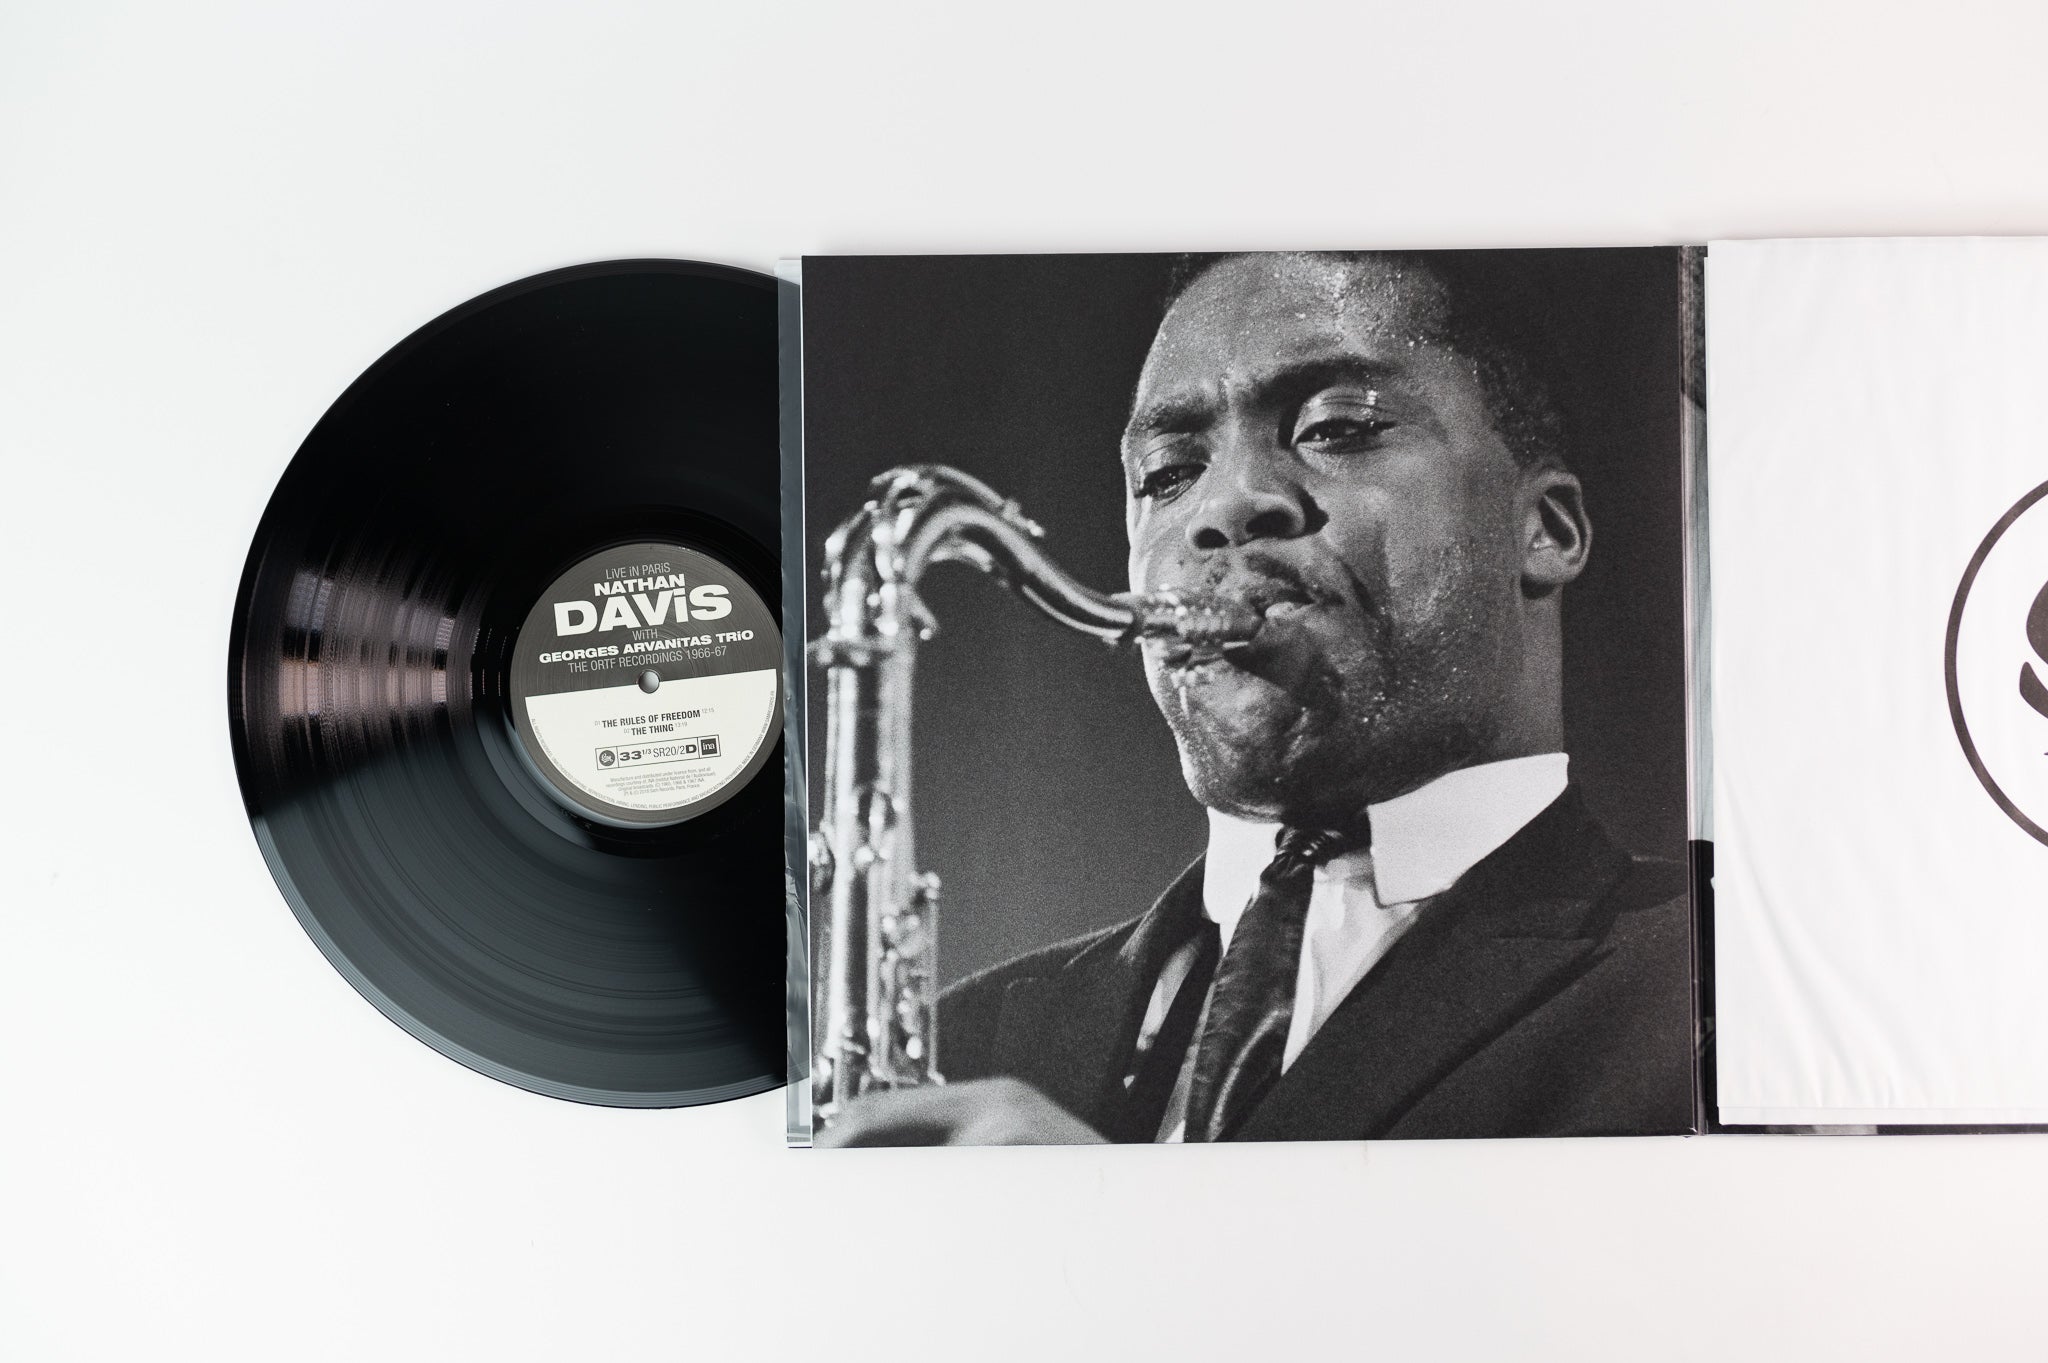 Nathan Davis. IF. LP. Jazz-